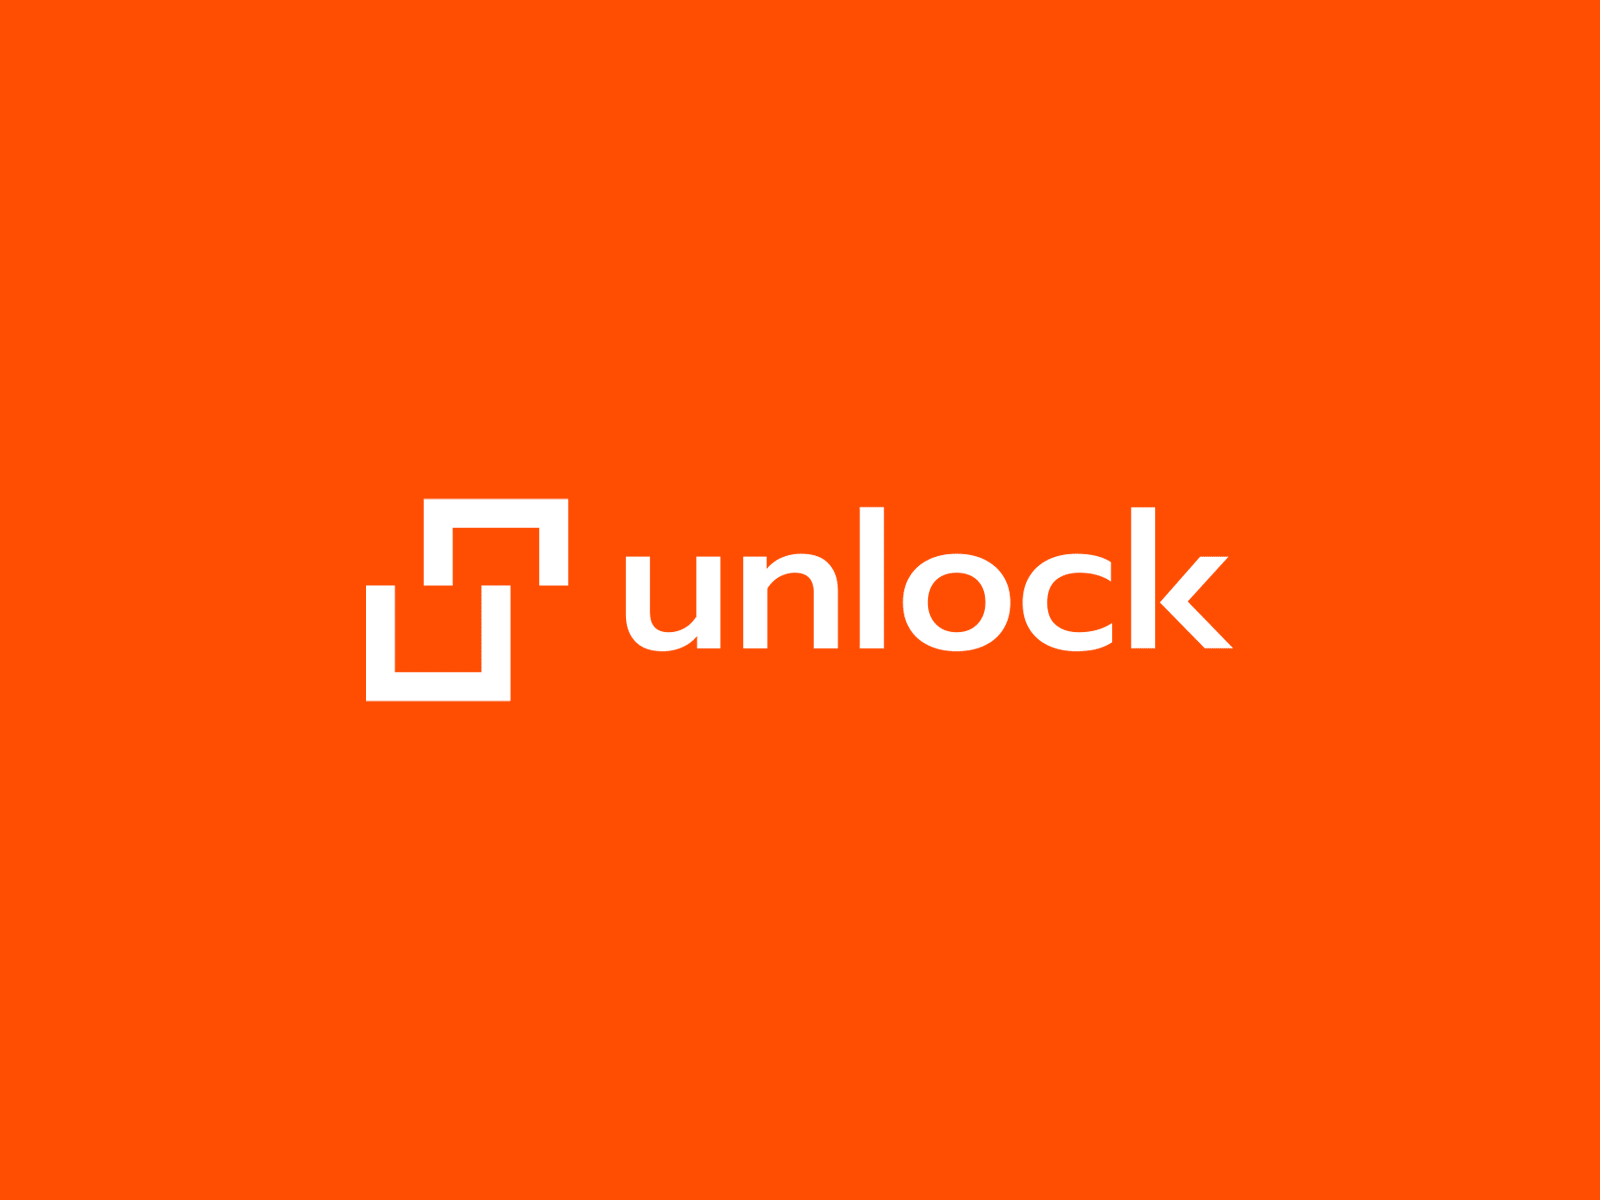 Unlock agency bis branding design flat graphic design logo minimal typography unlock vector